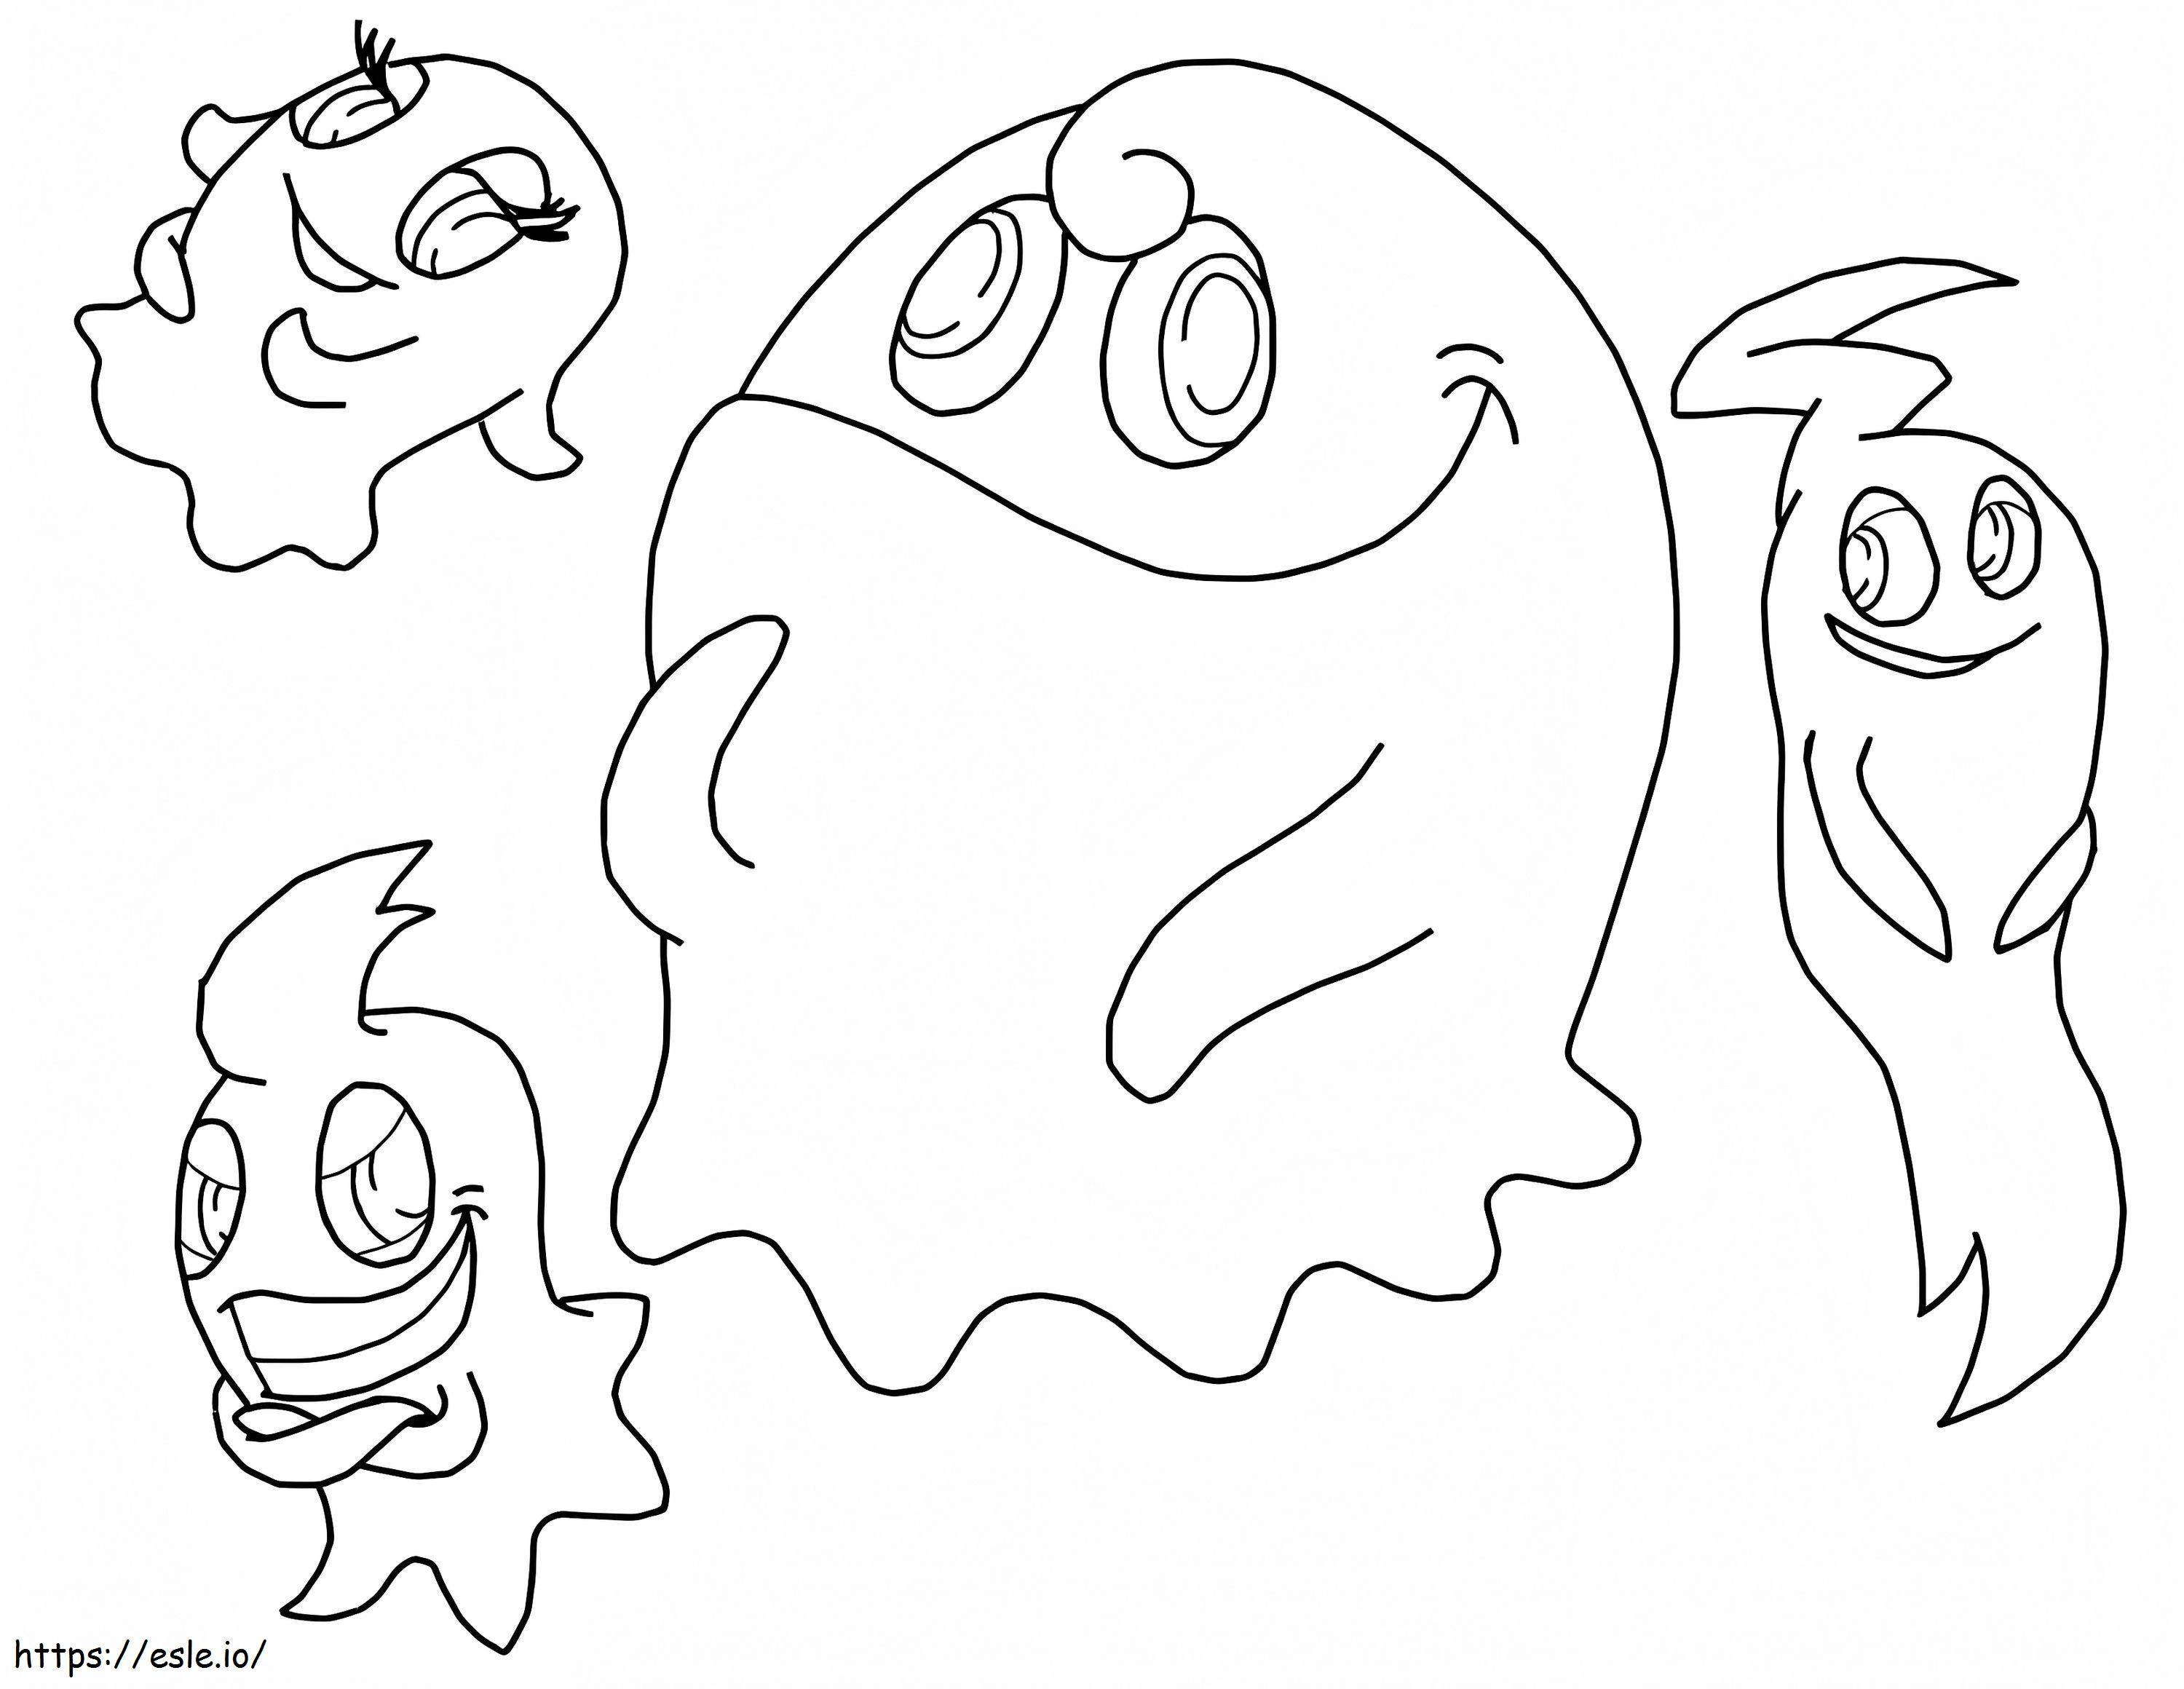 Cuatro fantasmas en Pacman para colorear